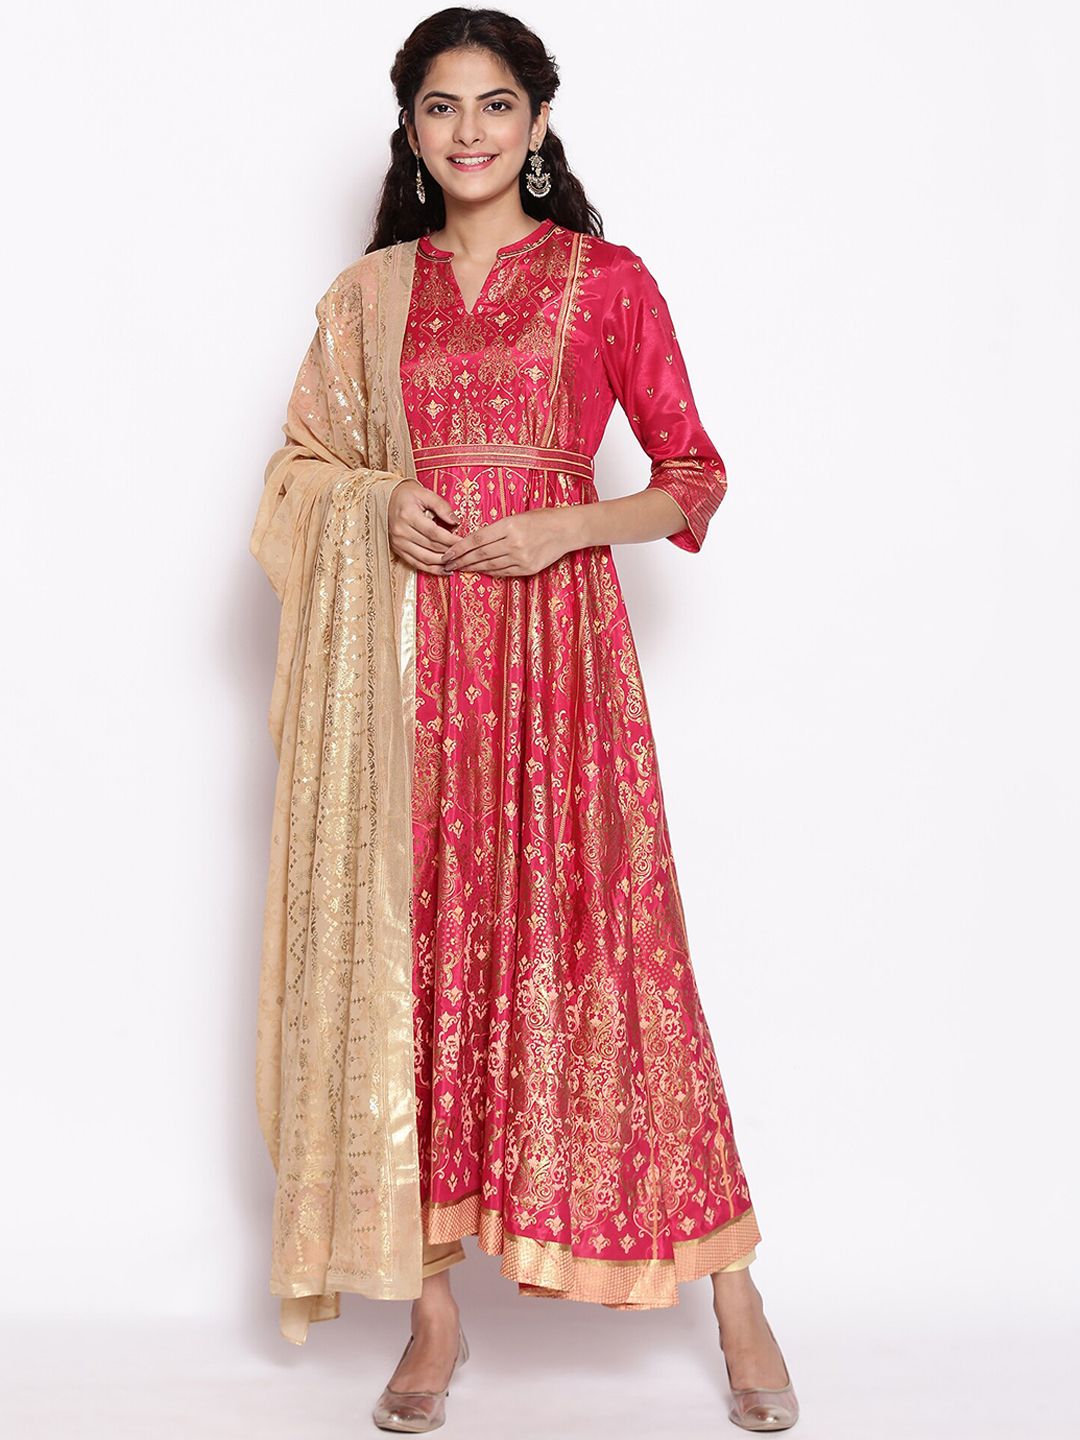 AURELIA Pink Ethnic Motifs Ethnic Maxi Dress Price in India